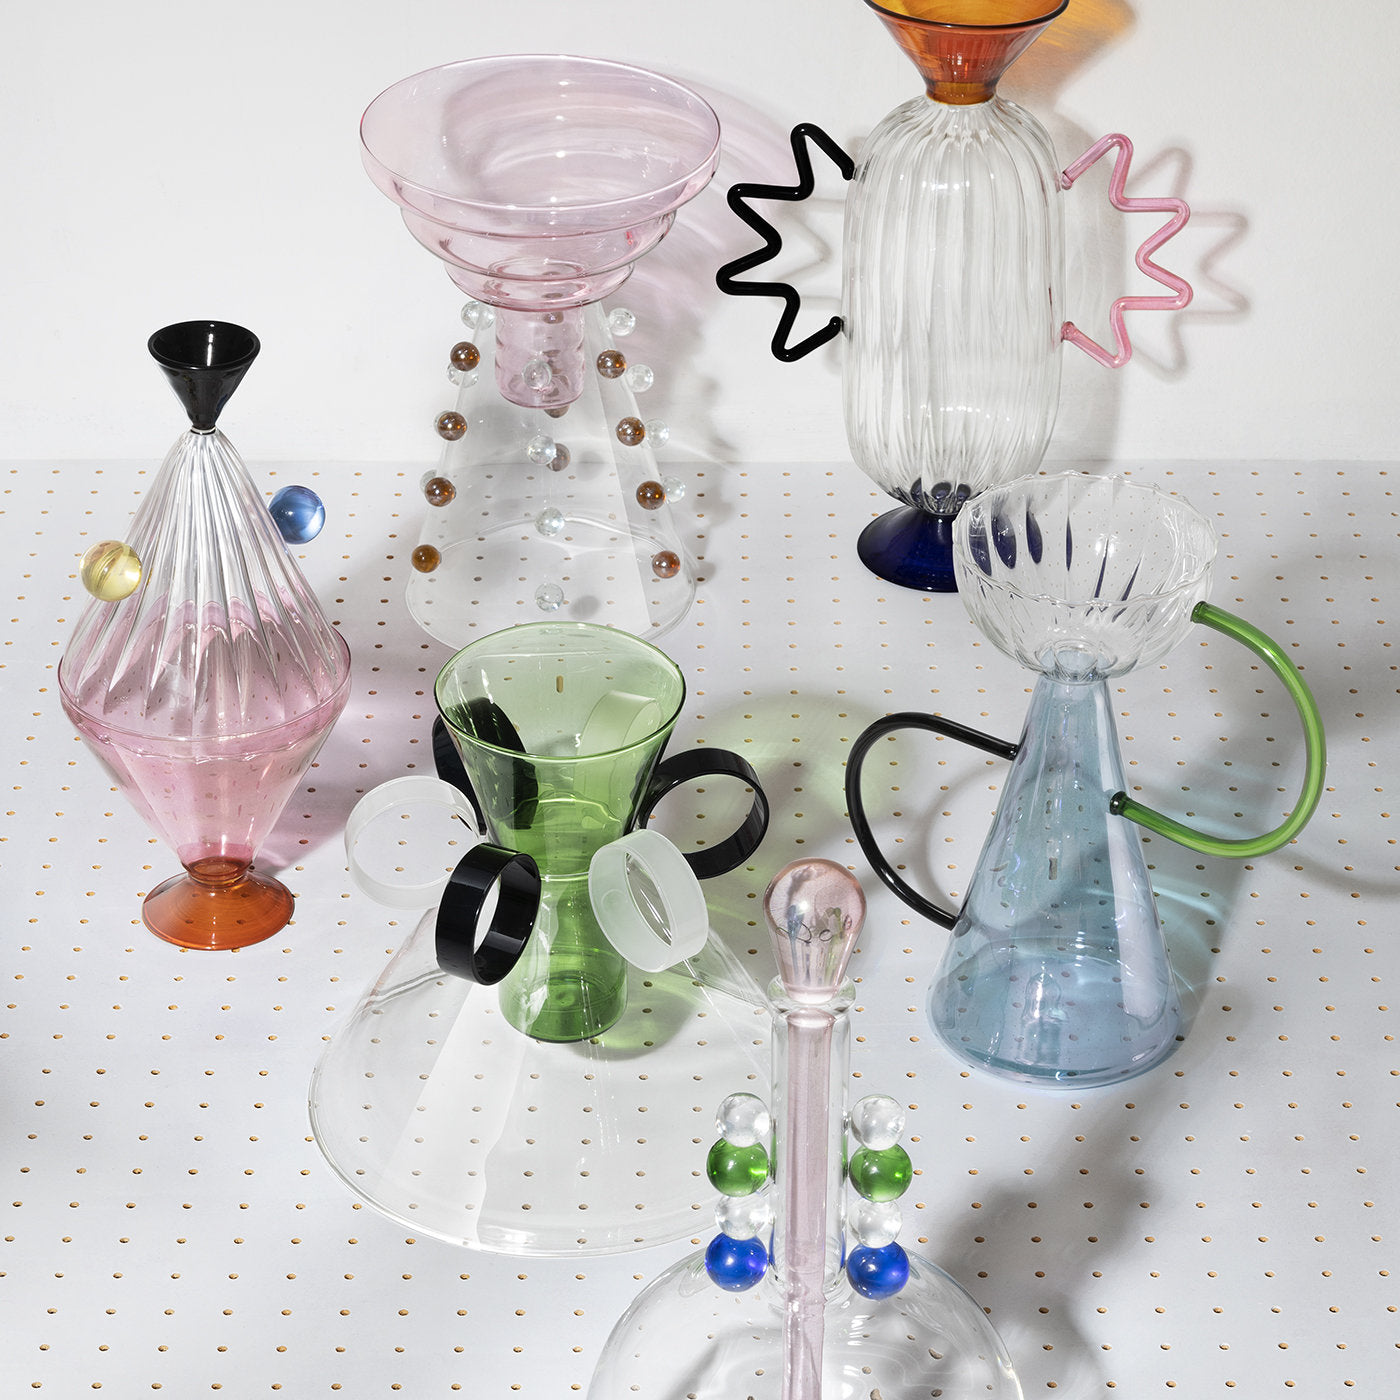 Arabesque 04 Hand-Blown Glass Vase - Alternative view 2